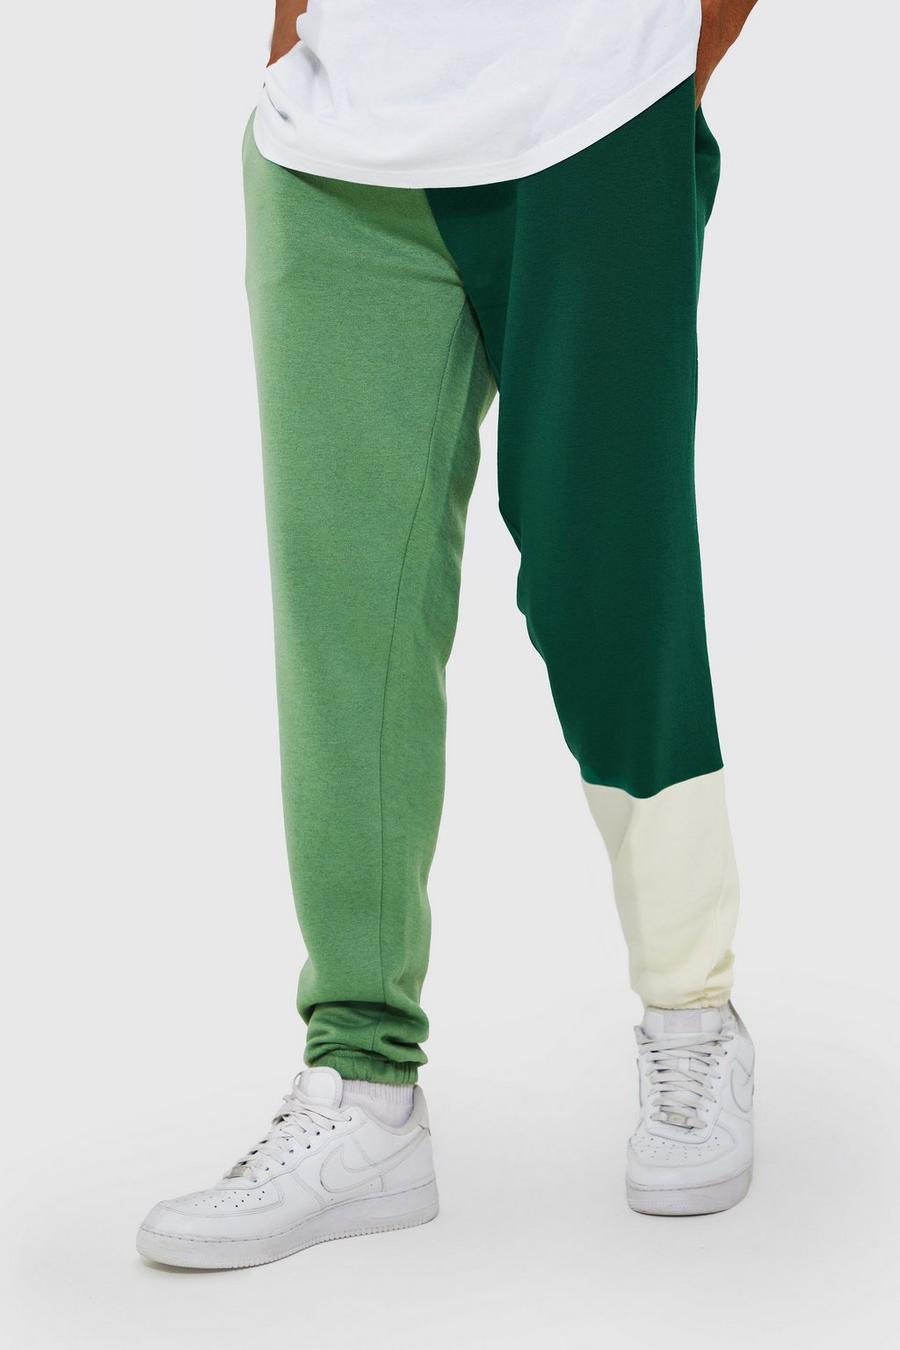 Pantaloni tuta Tall a blocchi di colore effetto patchwork, Green gerde